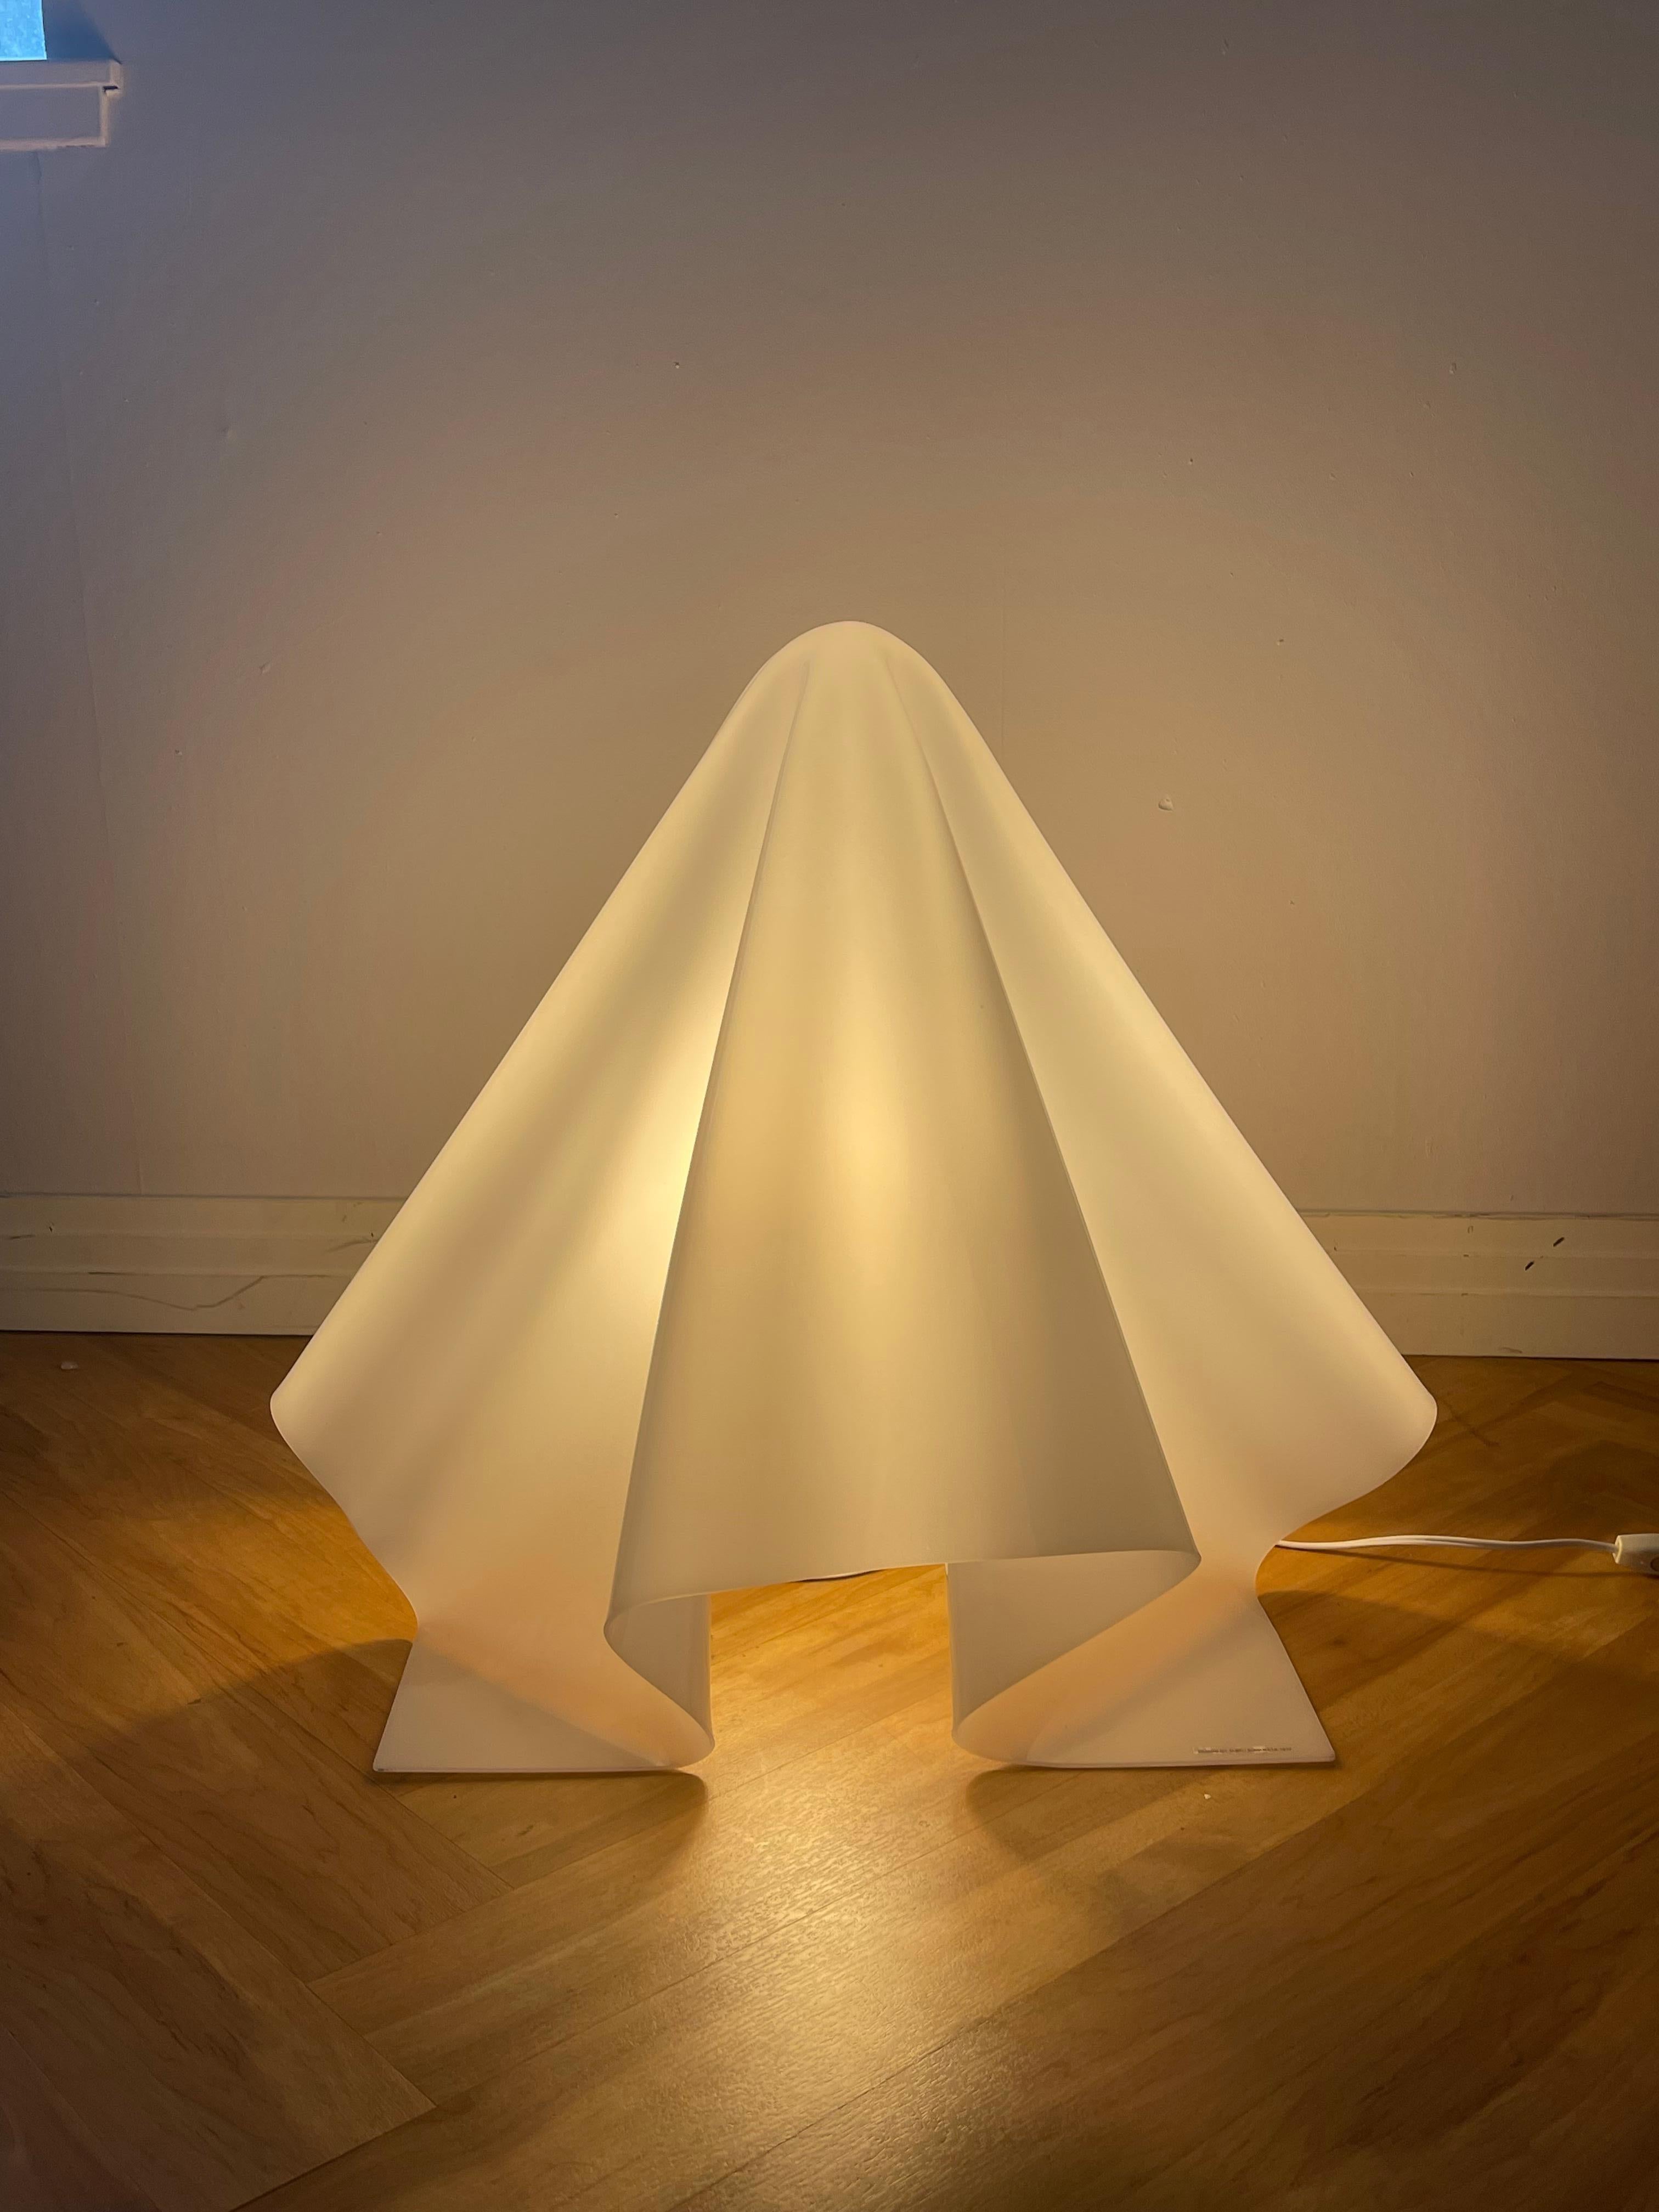 Grand lampadaire Oba-Q K series de Shiro Kuramata. Abat-jour en acrylique blanc avec source lumineuse externe. Excellent état. By/One, l'un des designers post-modernes les plus influents, est l'un des collectionneurs japonais les plus recherchés.